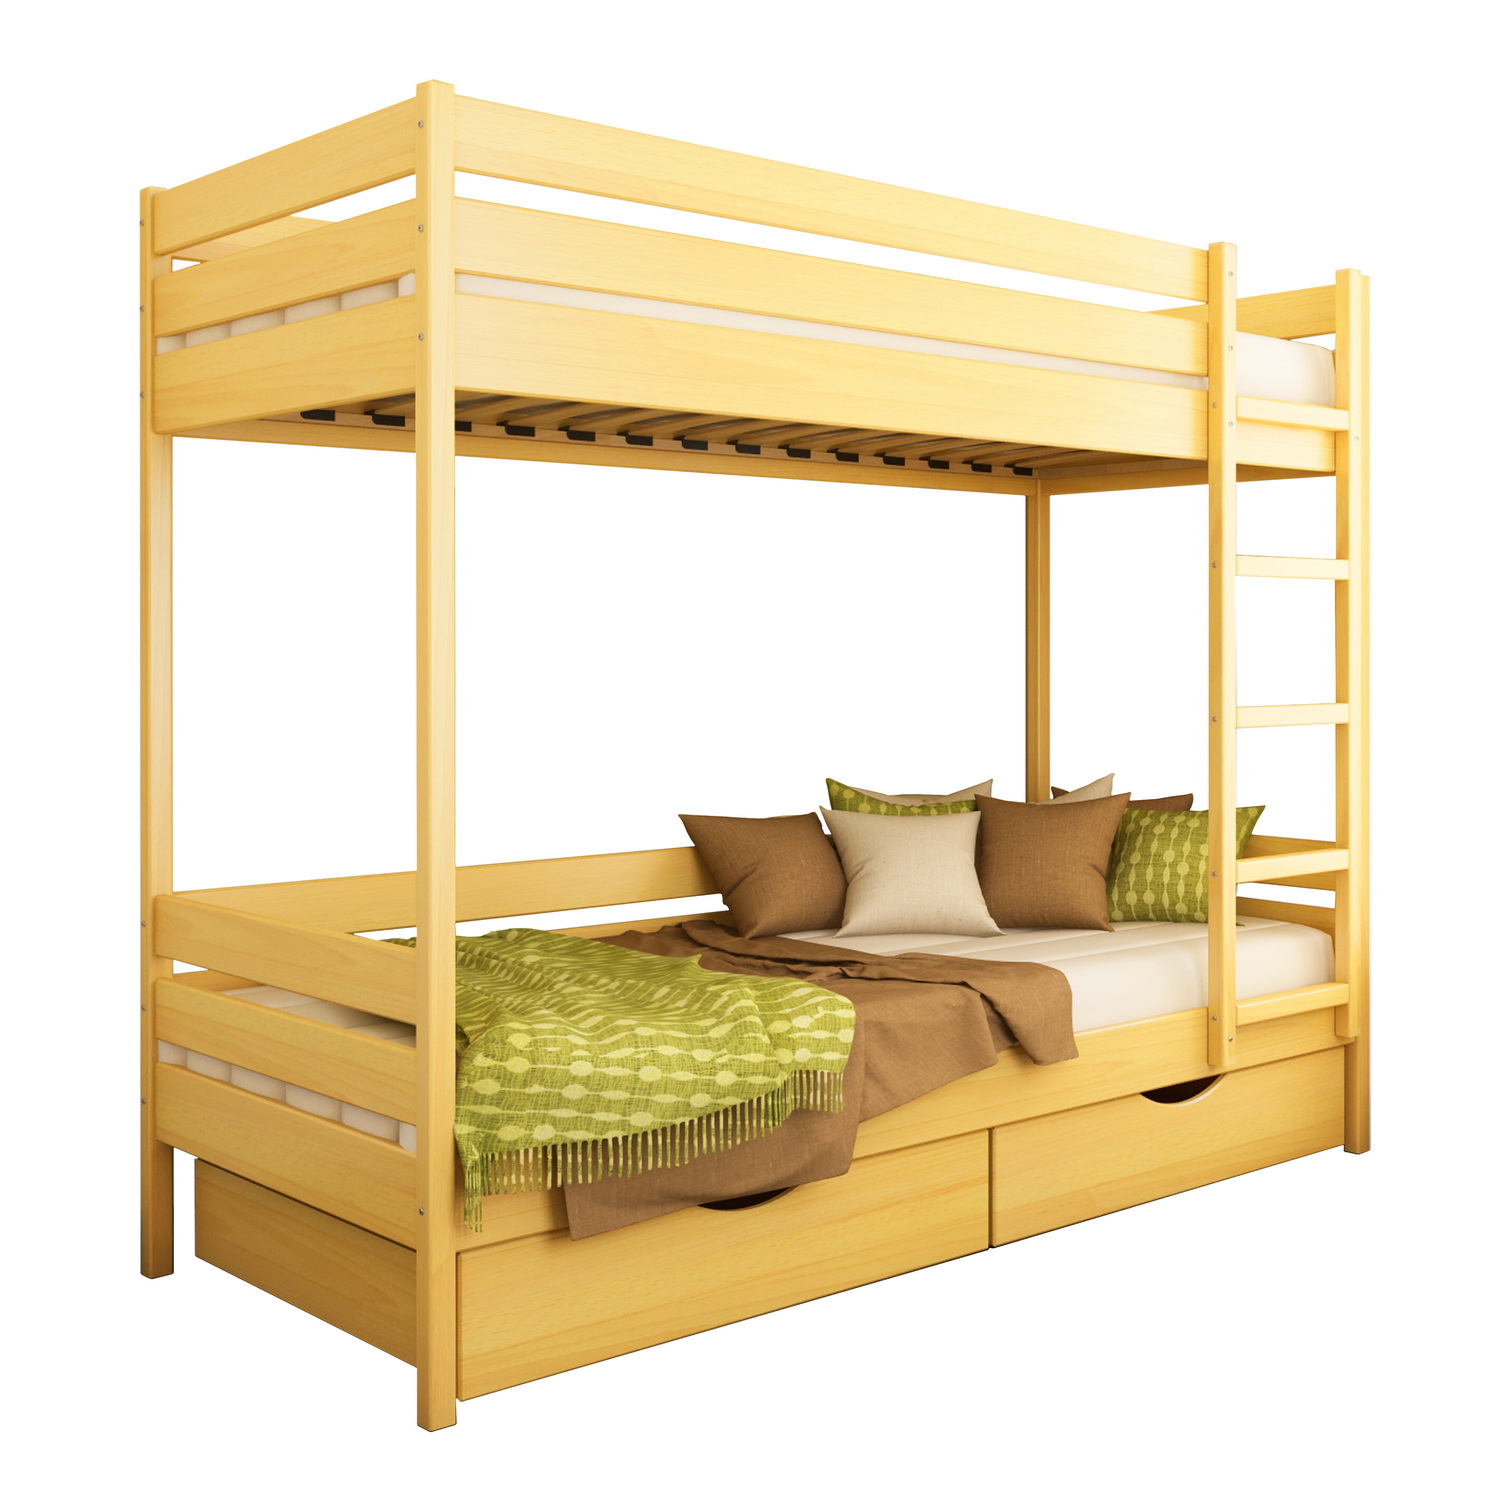 Двоярусне дитяче ліжко ДУЕТ ТМ Естелла двоxярусне, двоповерхове з драбиною, матеріал бук, основа ламелі, ящики для білизни, 8 кольорів